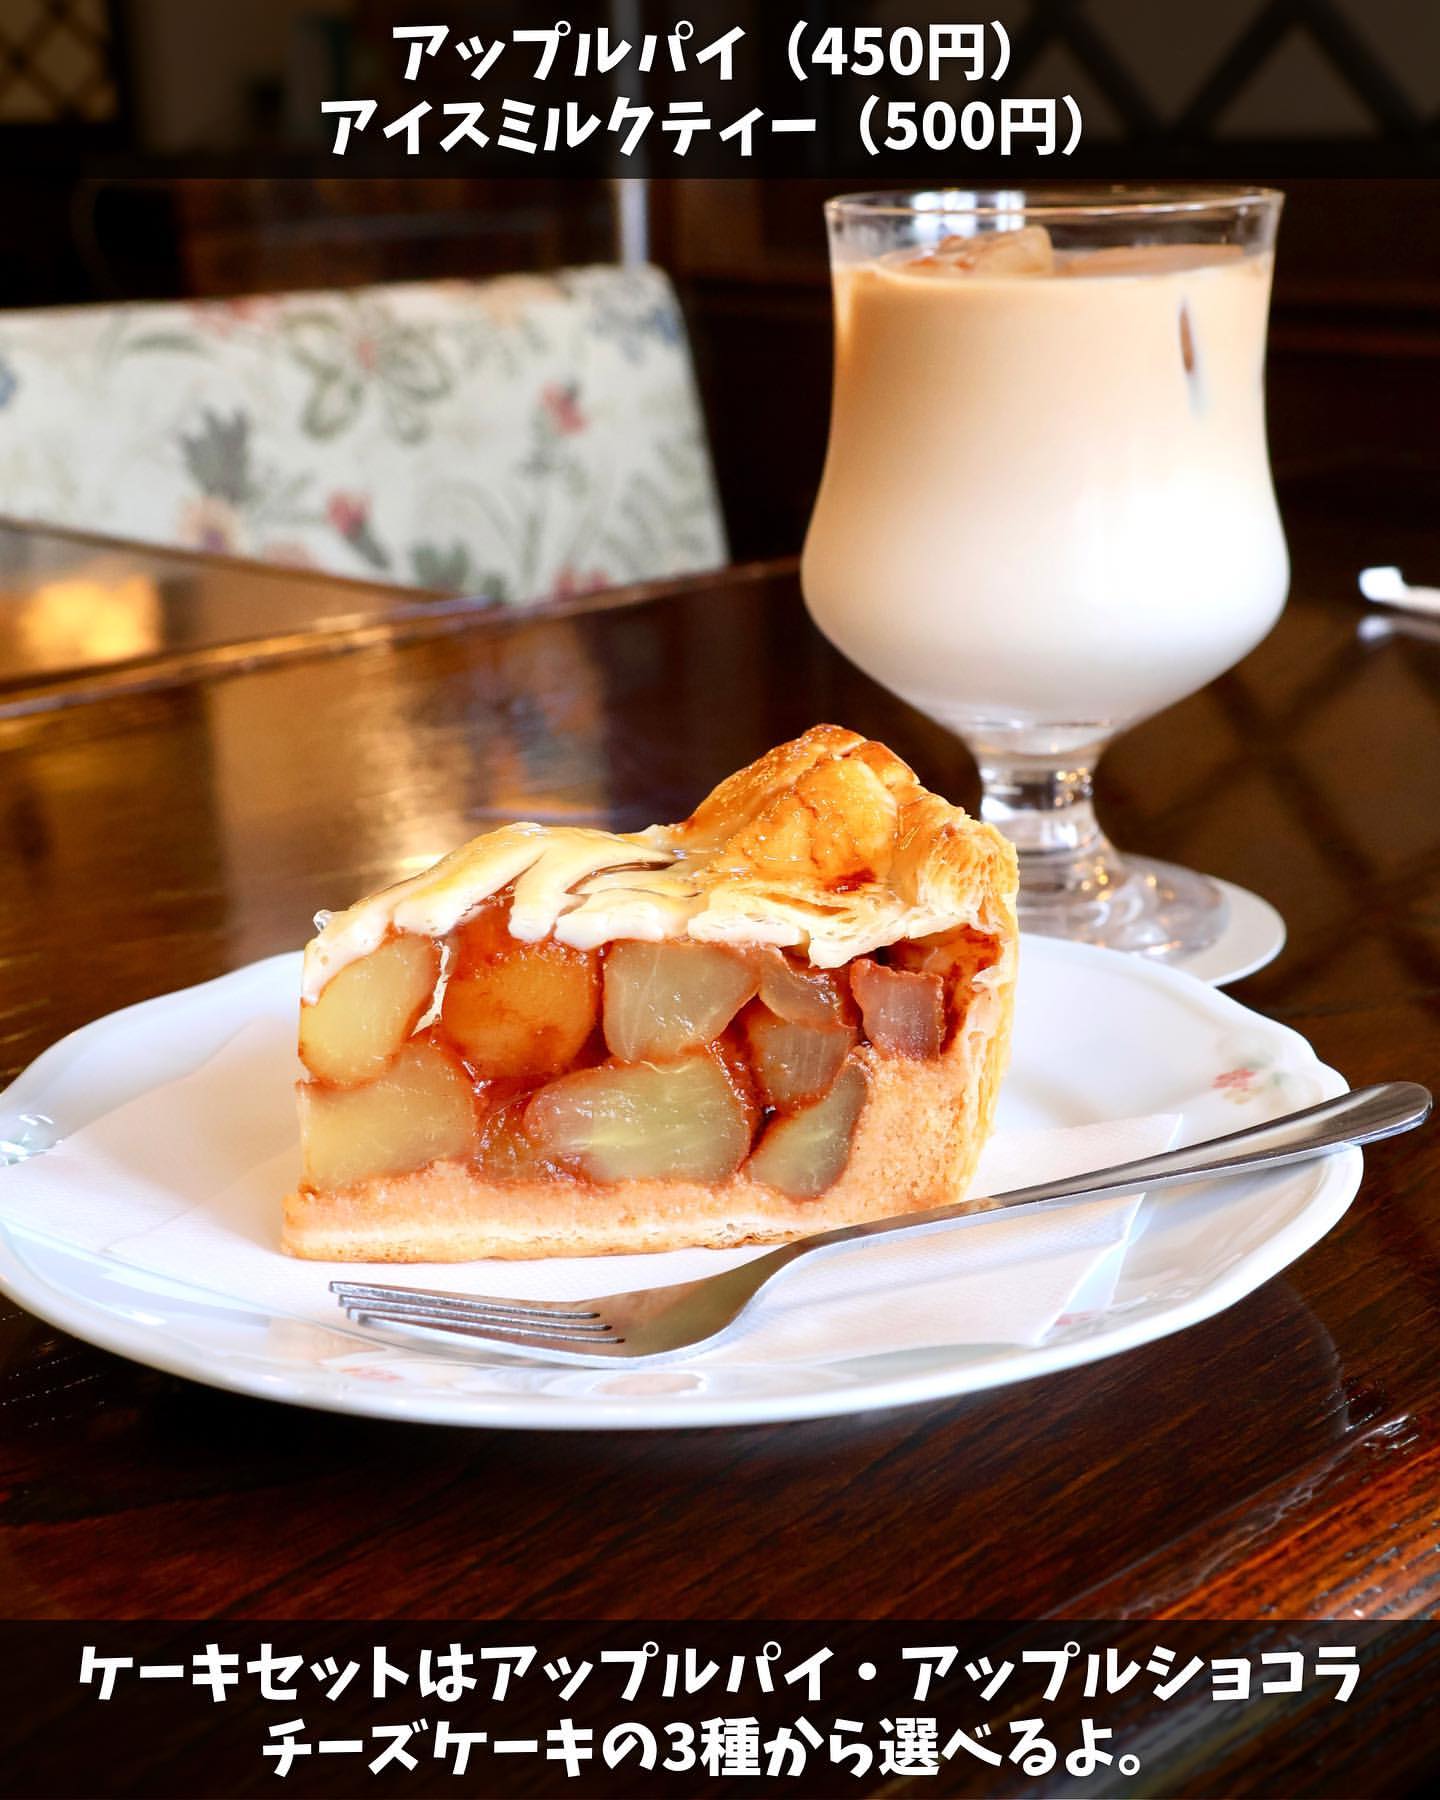 【弘前市・土手の珈琲屋 万茶ン】アップルパイとアイスミルクティー